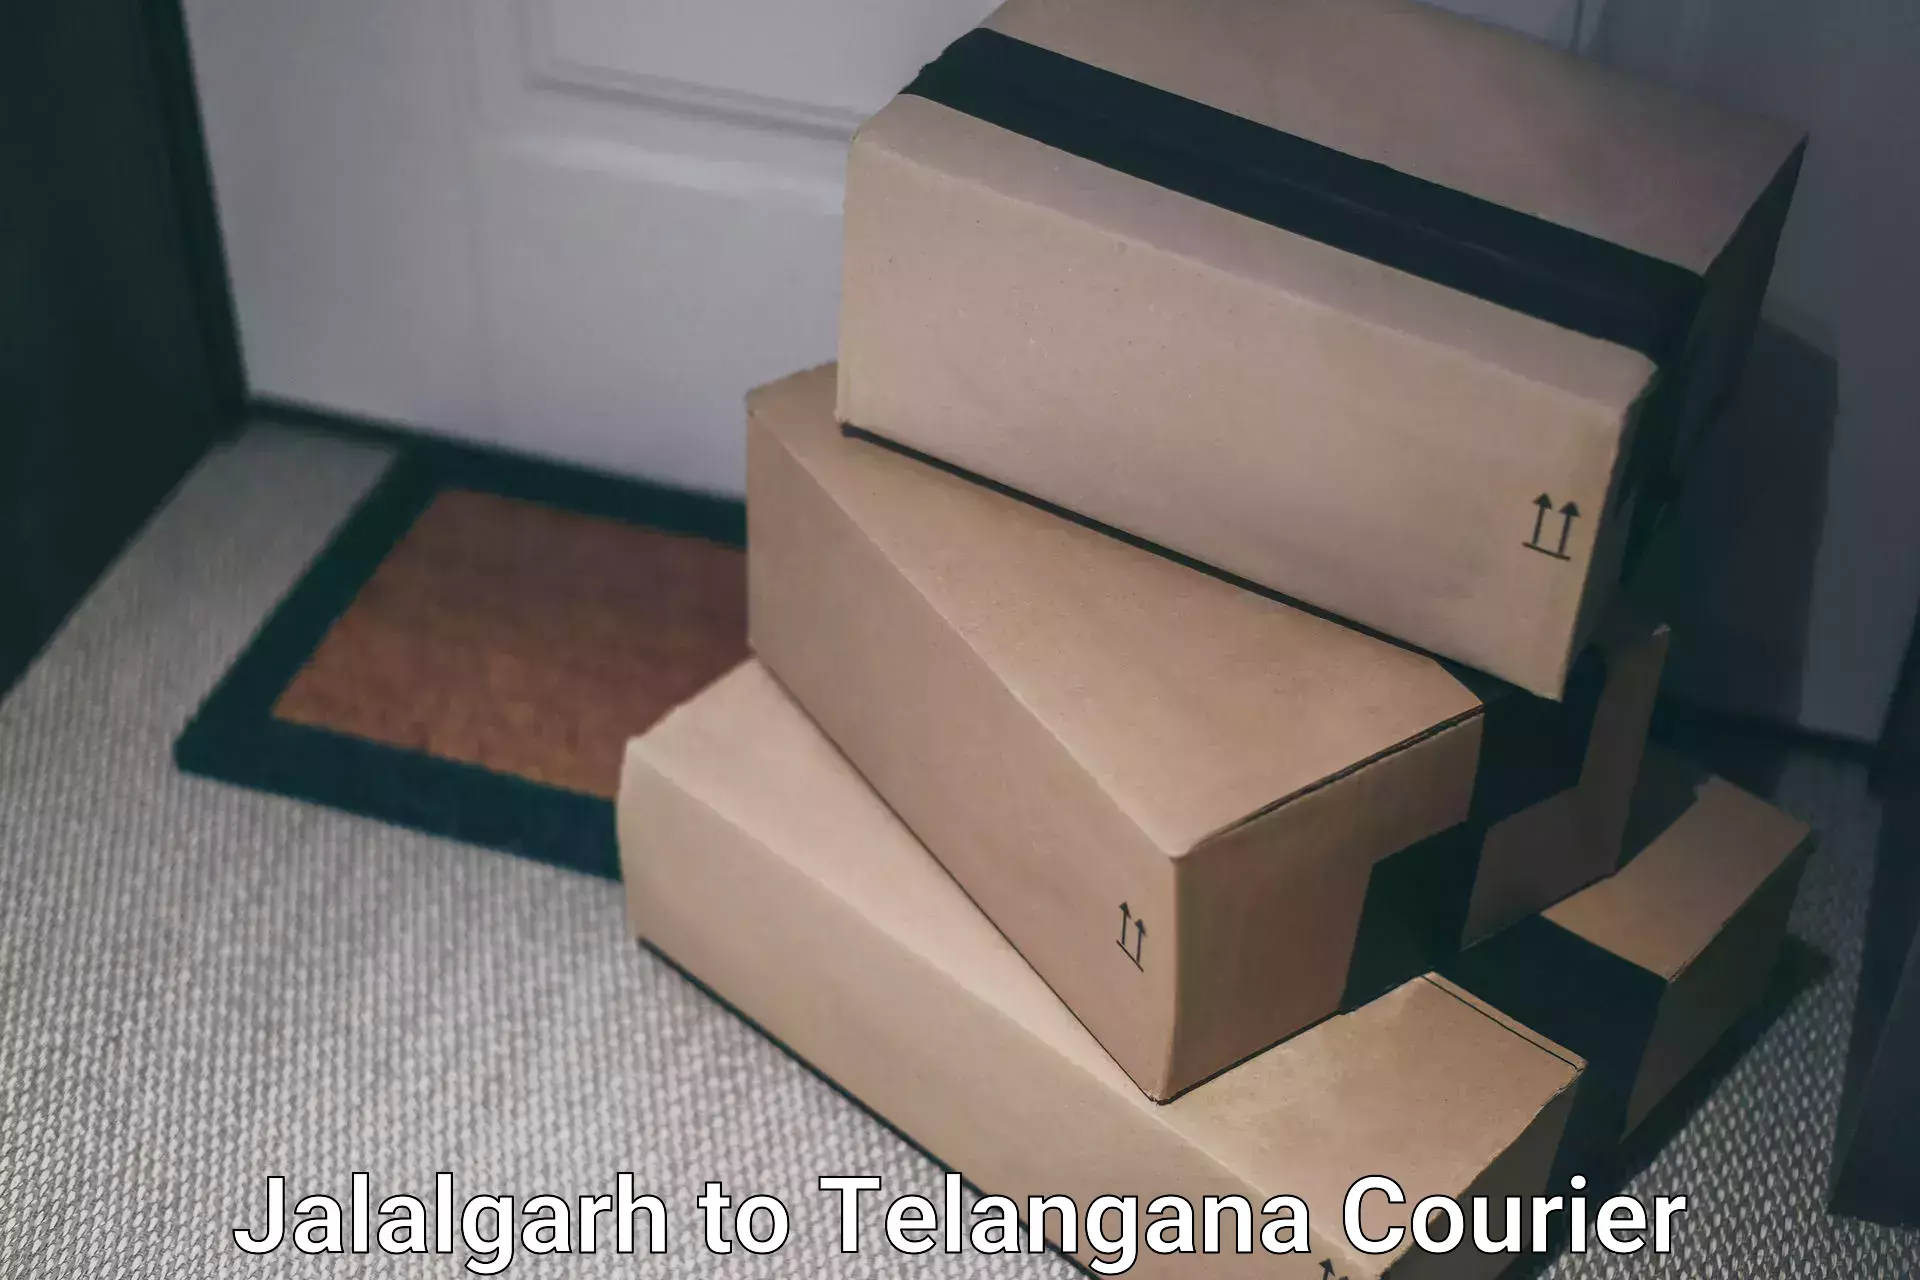 Bulk shipment Jalalgarh to Manopad